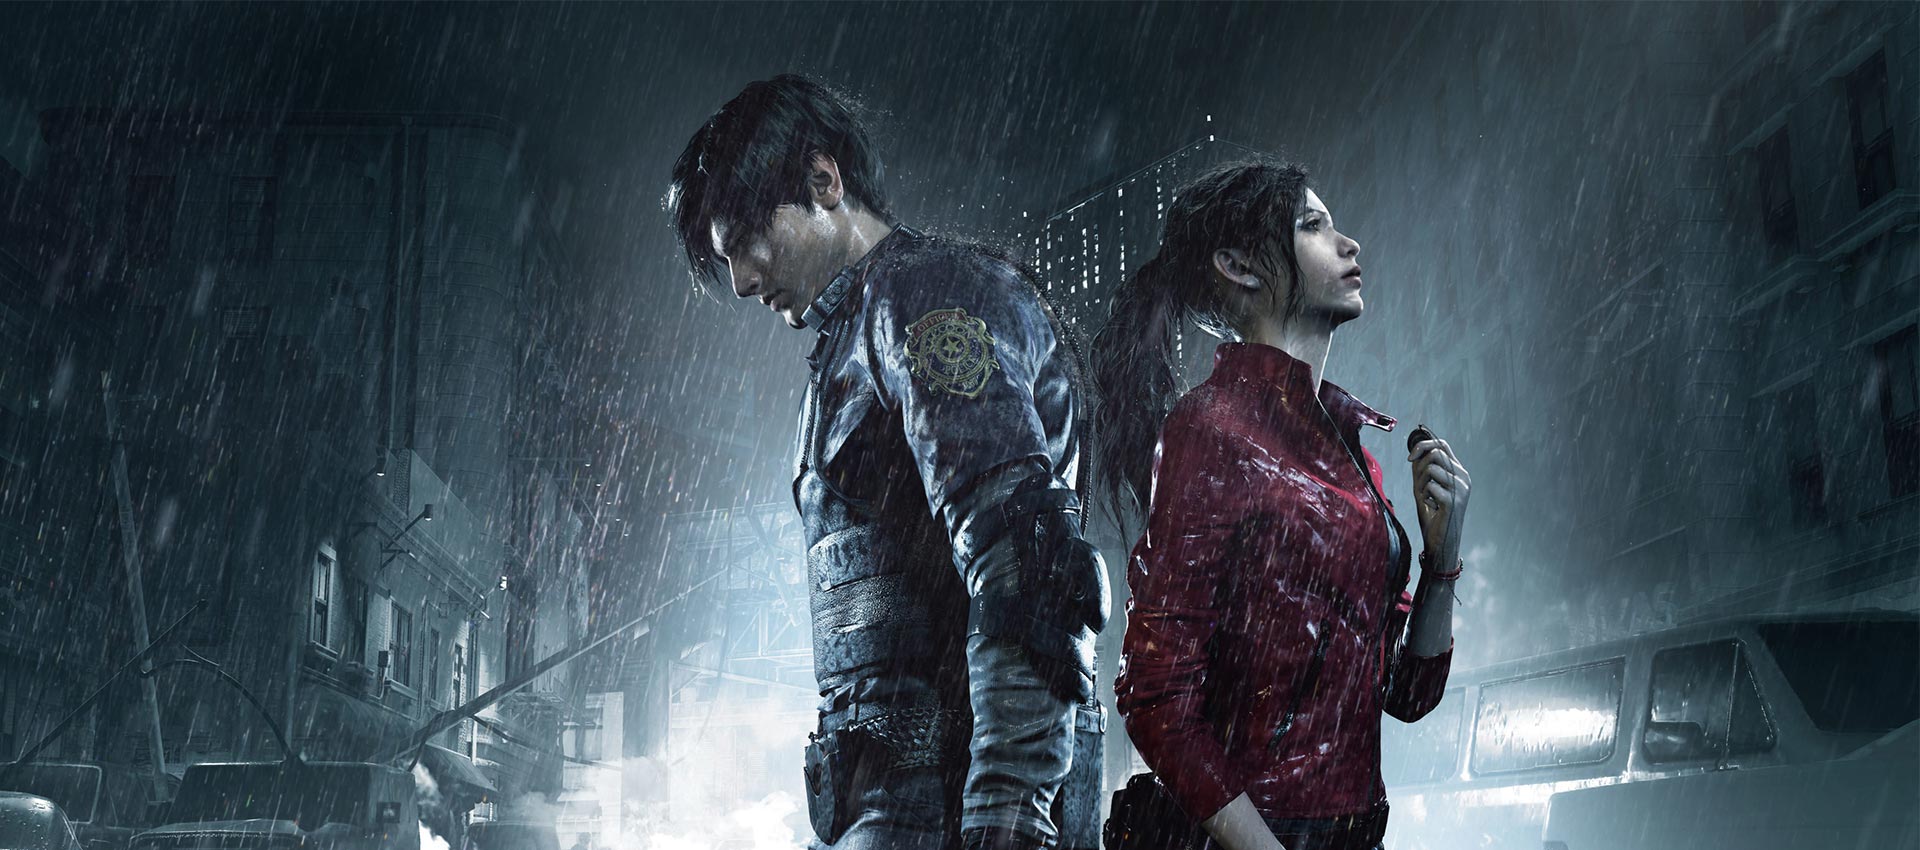 ریمیک Resident Evil 2 چگونه بر ژانر وحشت و بقا تاثیر گذاشت؟